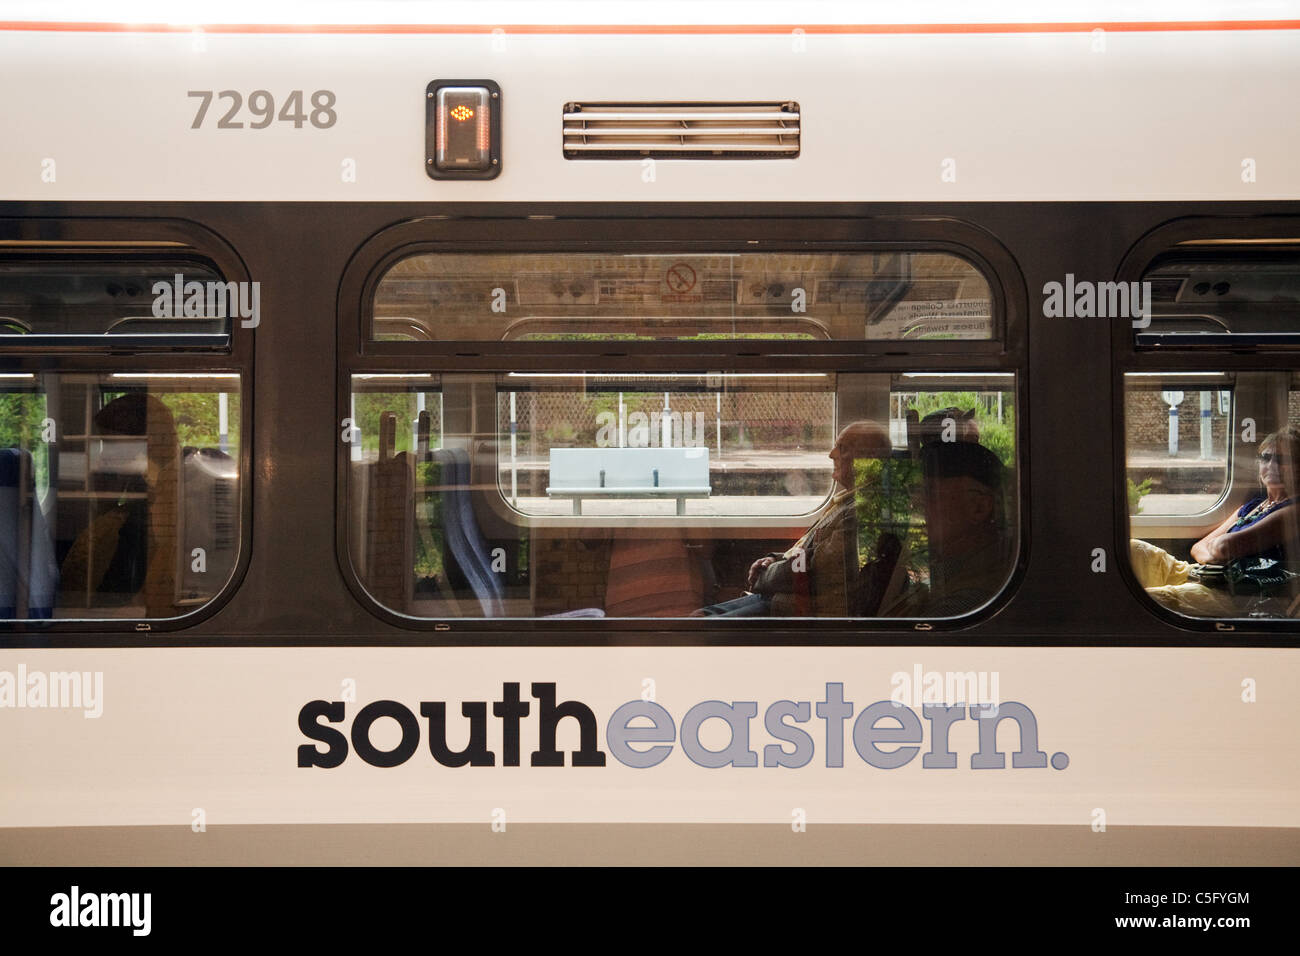 Südöstlichen Zug; ein South Eastern Eisenbahn Waggon, London UK Stockfoto